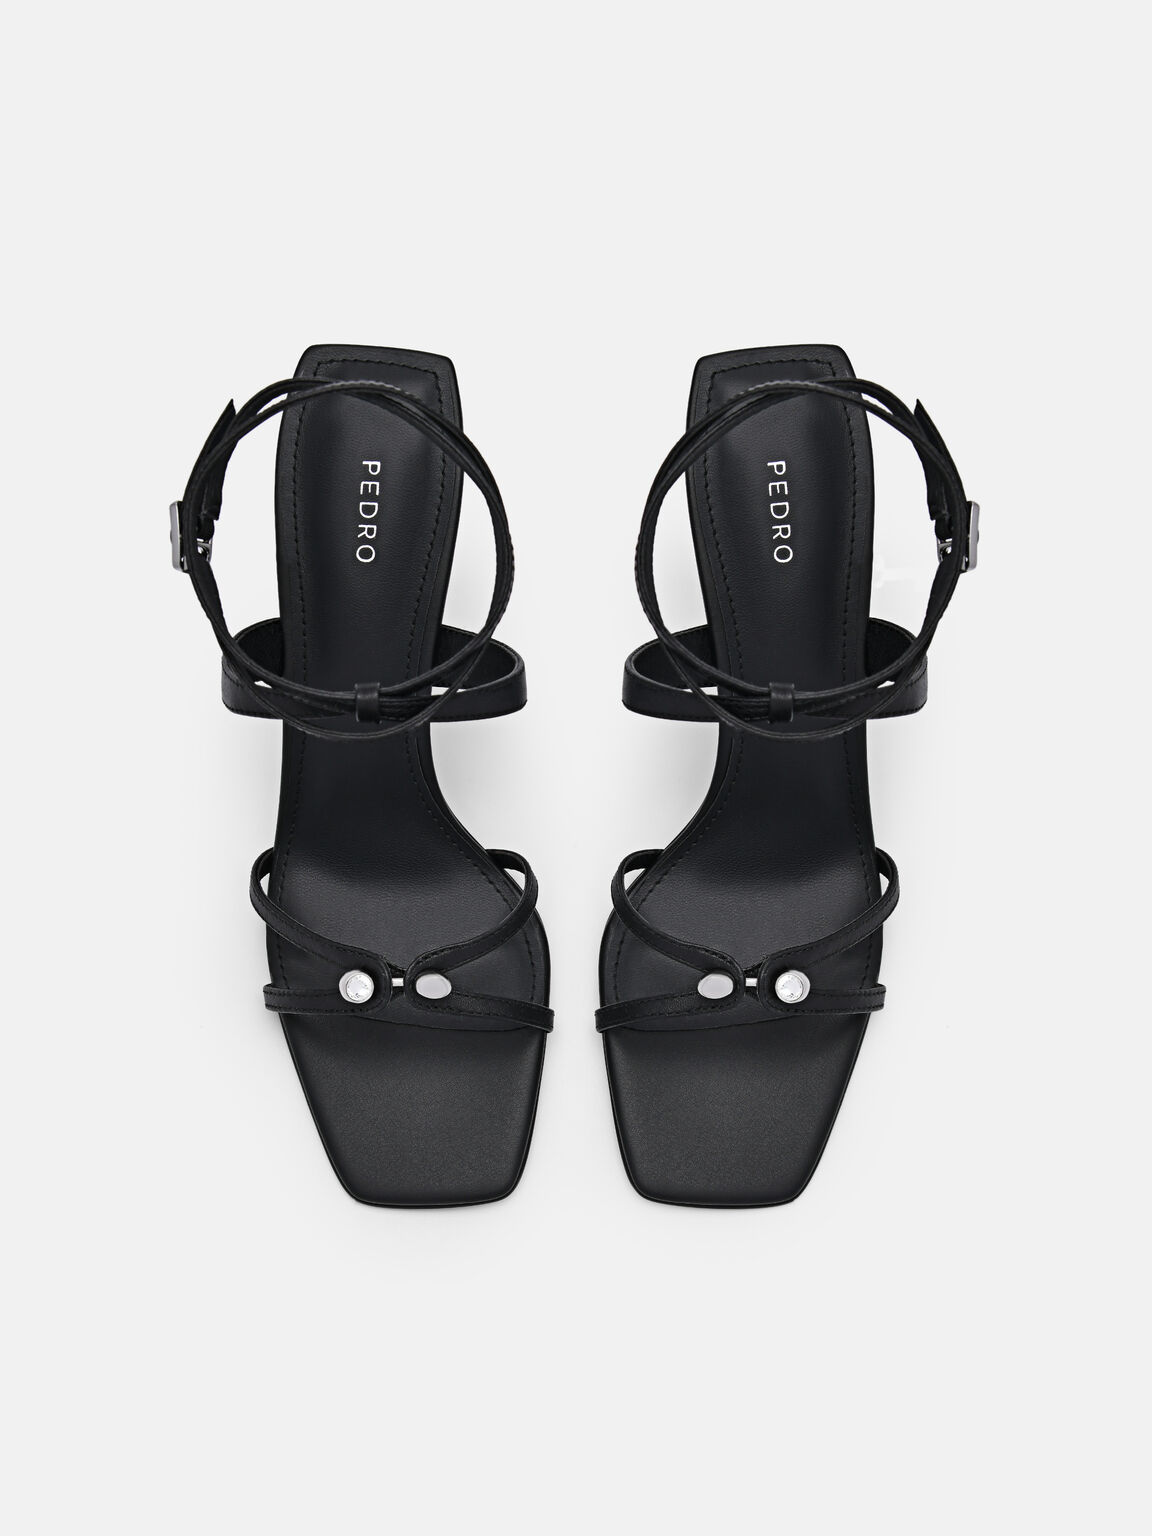 Sofia Leather Heel Sandals, Black